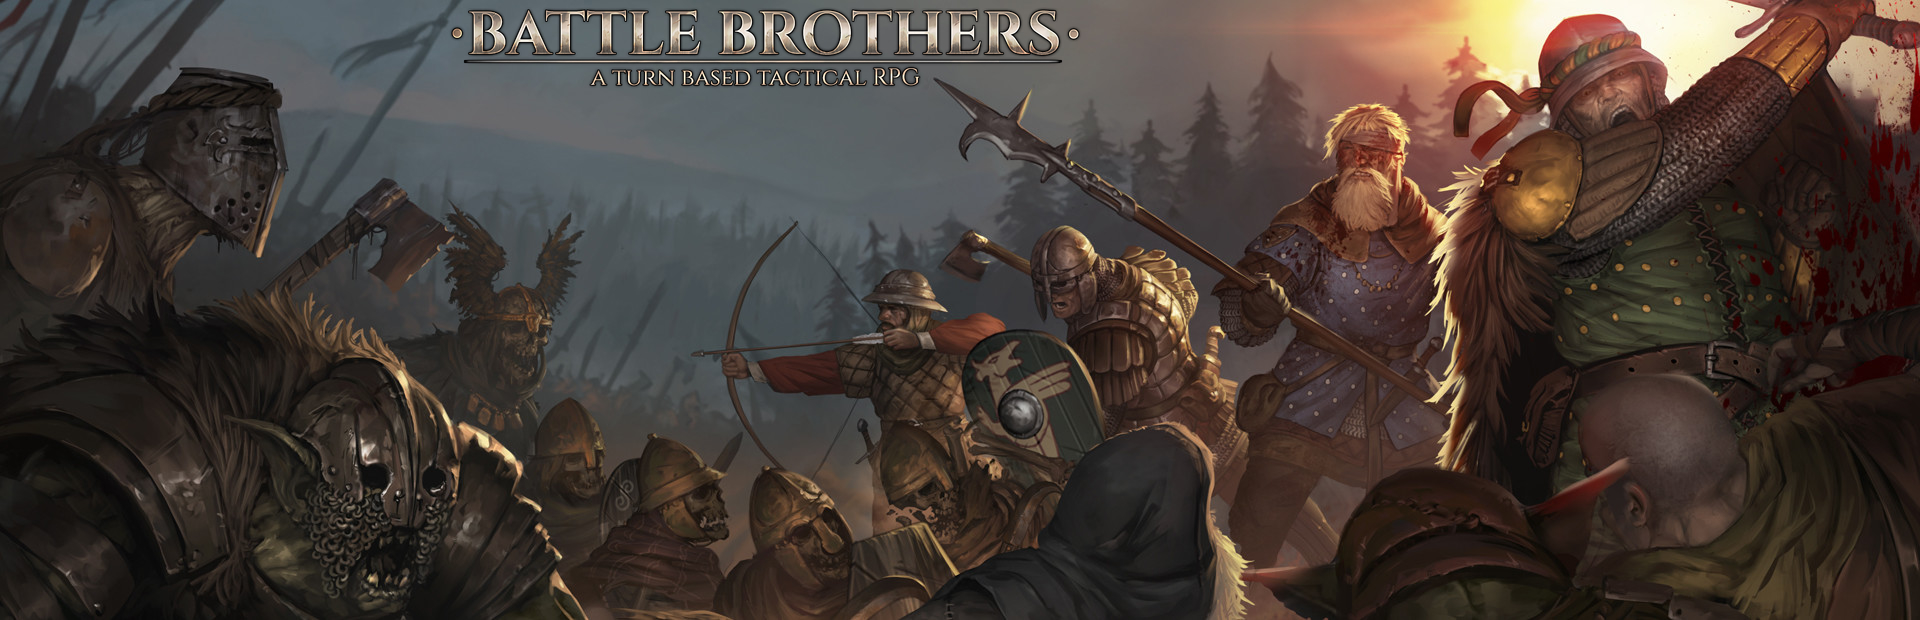 دانلود بازی Battle Brothers برای کامپیوتر | گیمباتو